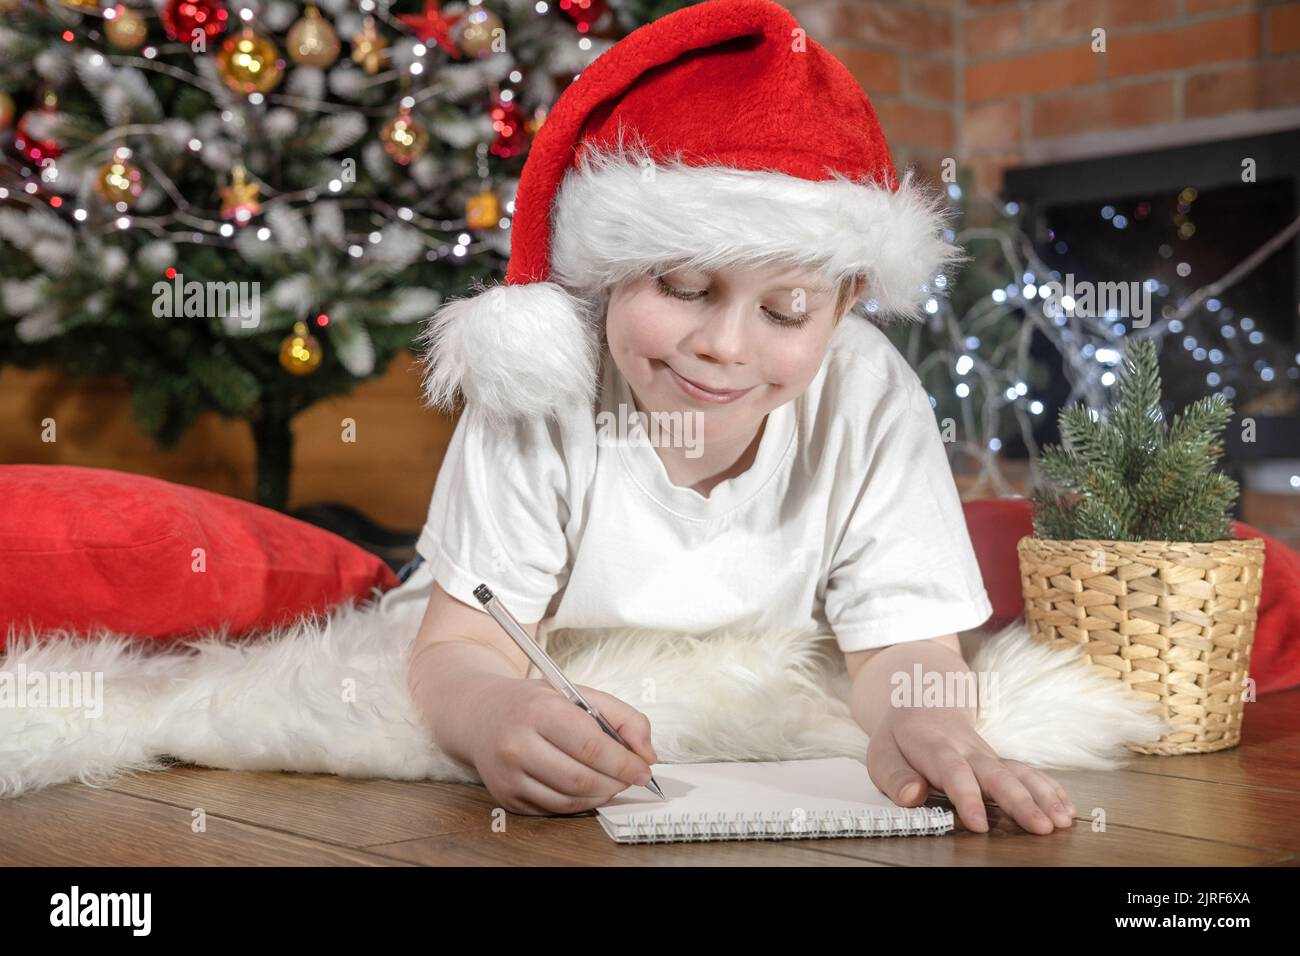 Joyeux Noël aux enfants. Garçon enfant dans le chapeau du Père Noël écrit une lettre au Père Noël sous l'arbre de Noël avec des lumières de Noël, près de la cheminée. Famille Banque D'Images